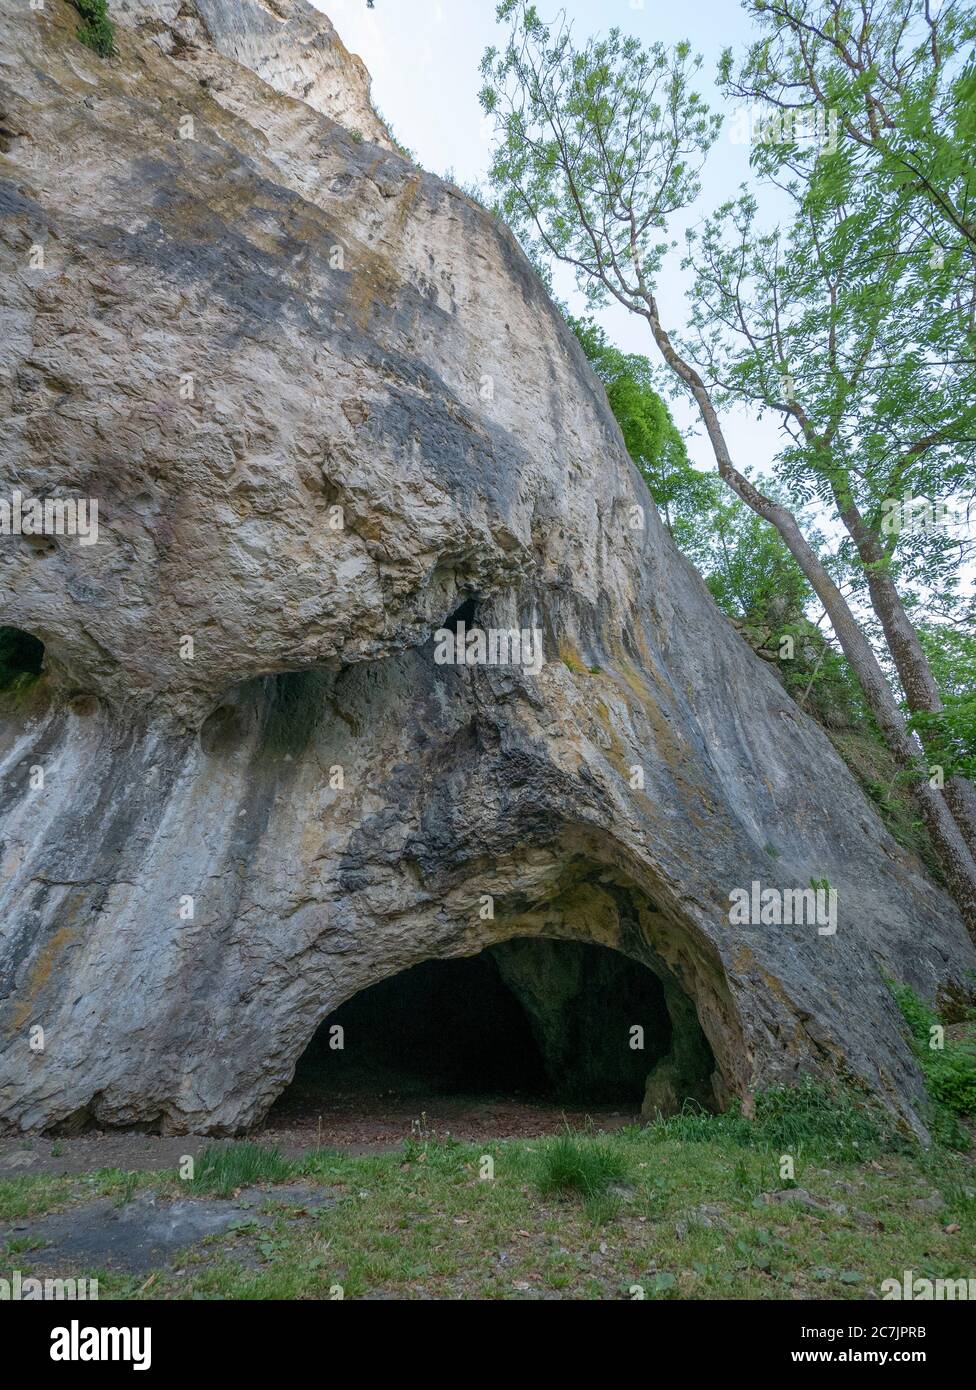 Cueva de Sirgenstein, cuevas Patrimonio de la Humanidad de la UNESCO y arte de la era del hielo del Jura Suabia, Schelklingen, Jura Suabia, Baden-Württemberg, Alemania Foto de stock